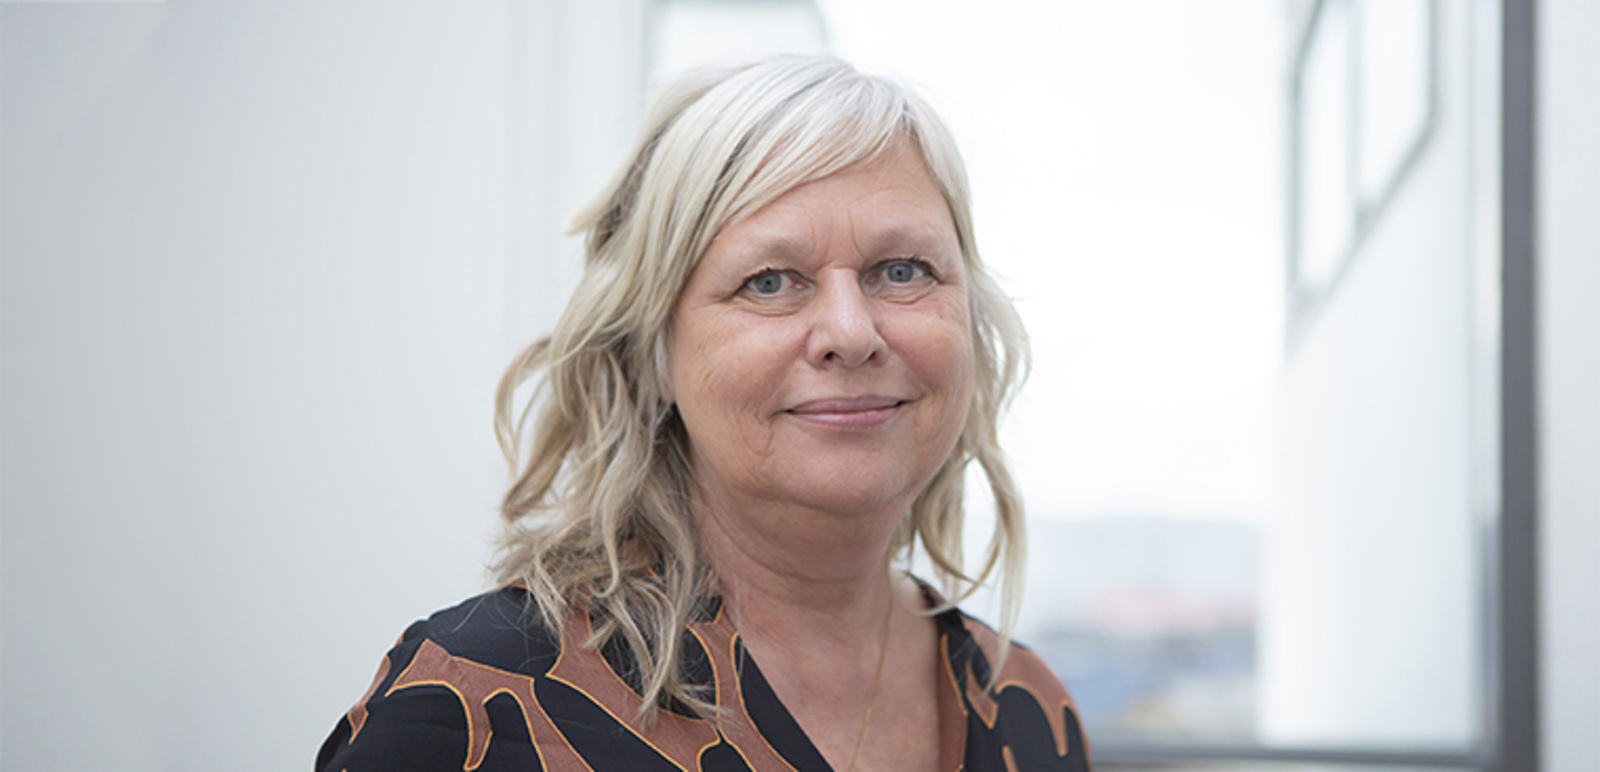 Anita Norlund